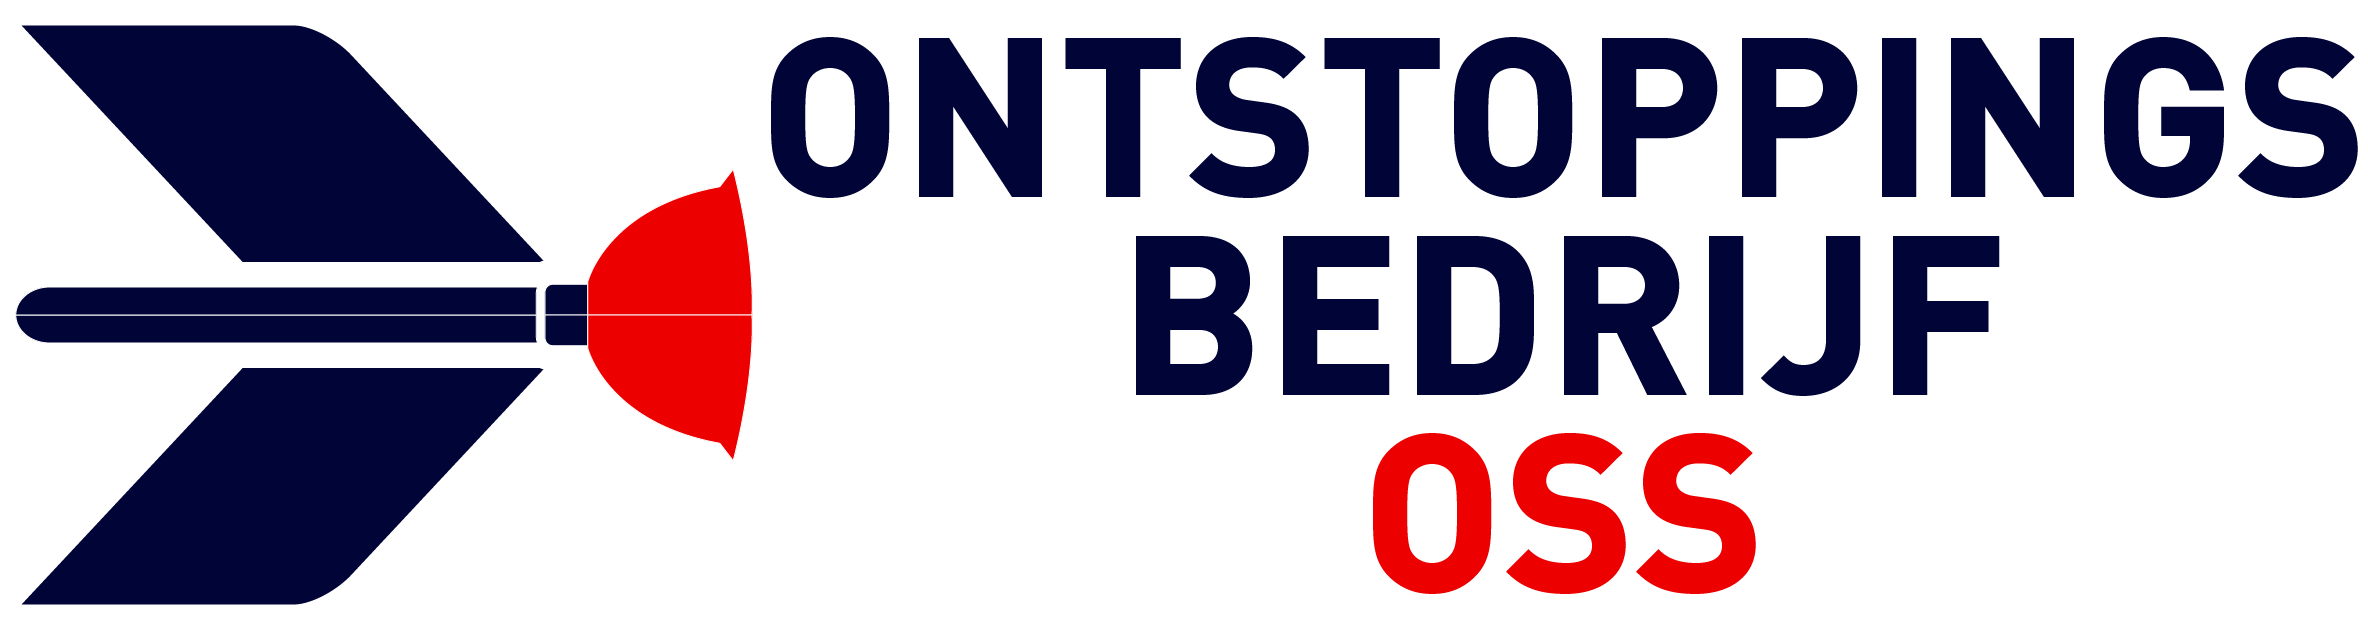 Ontstoppingsbedrijf Oss logo